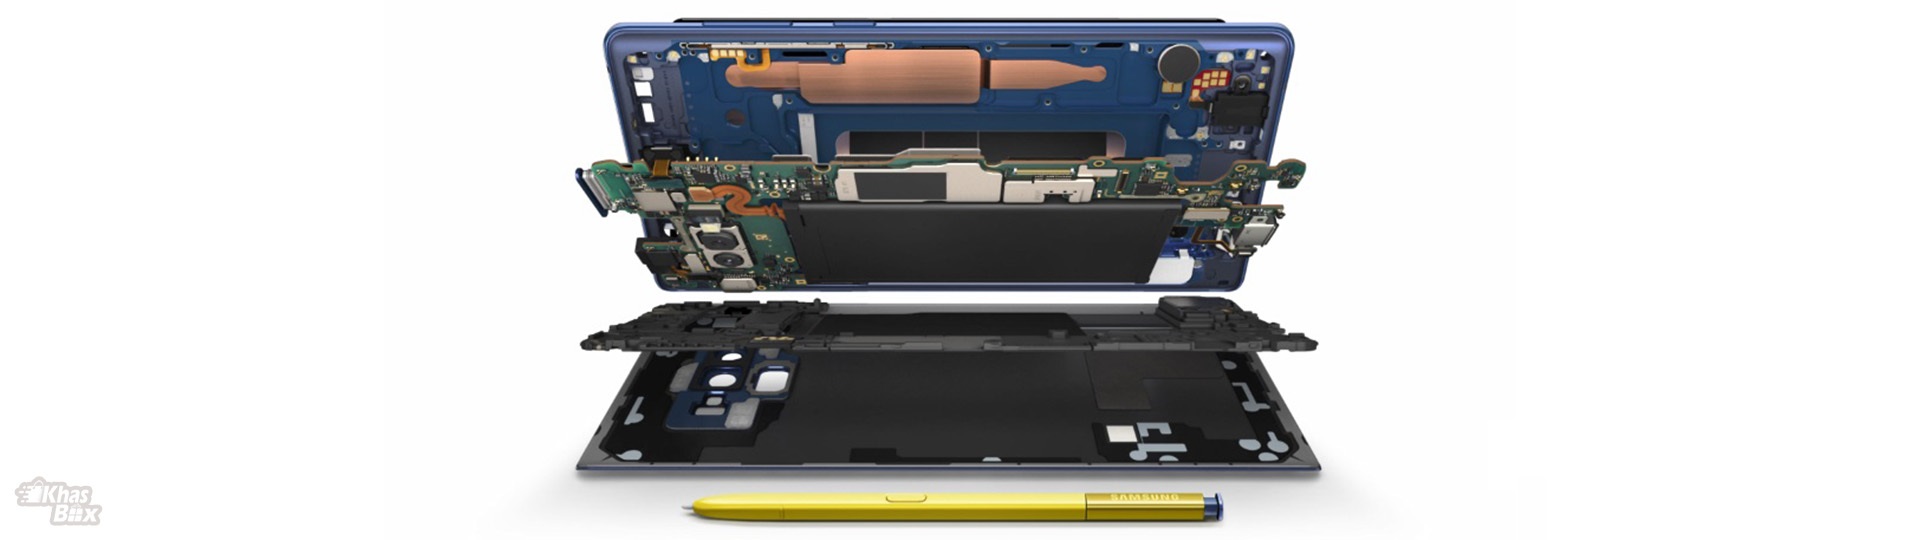 گوشی موبایل سامسونگ مدل Galaxy Note 9